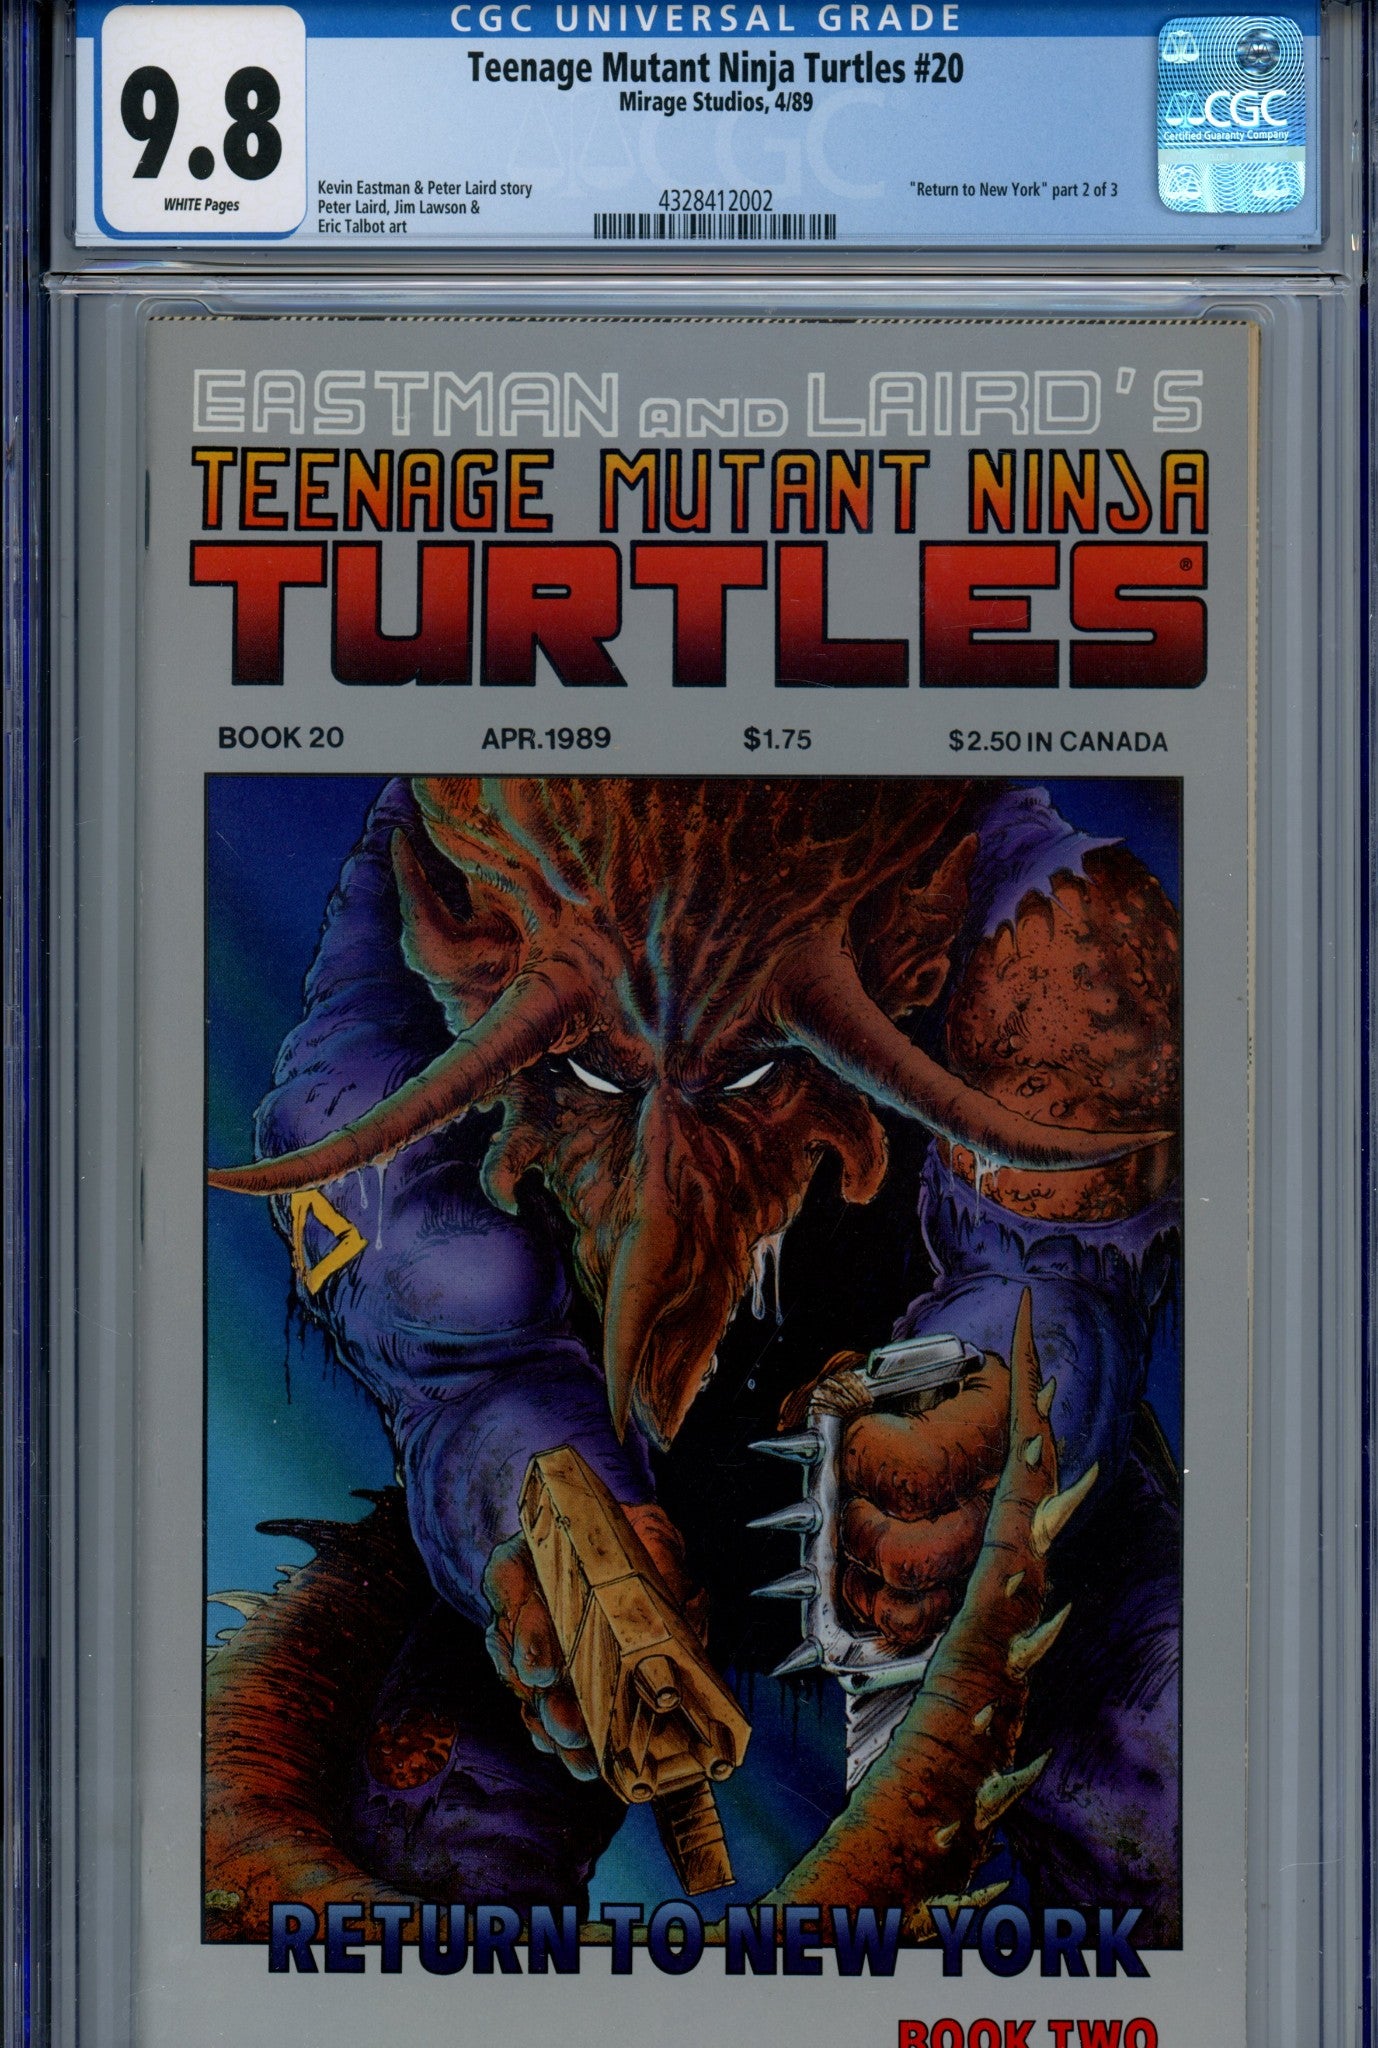 Teenage Mutant Ninja Turtles Vol 1 20 CGC 9.8 (1989)